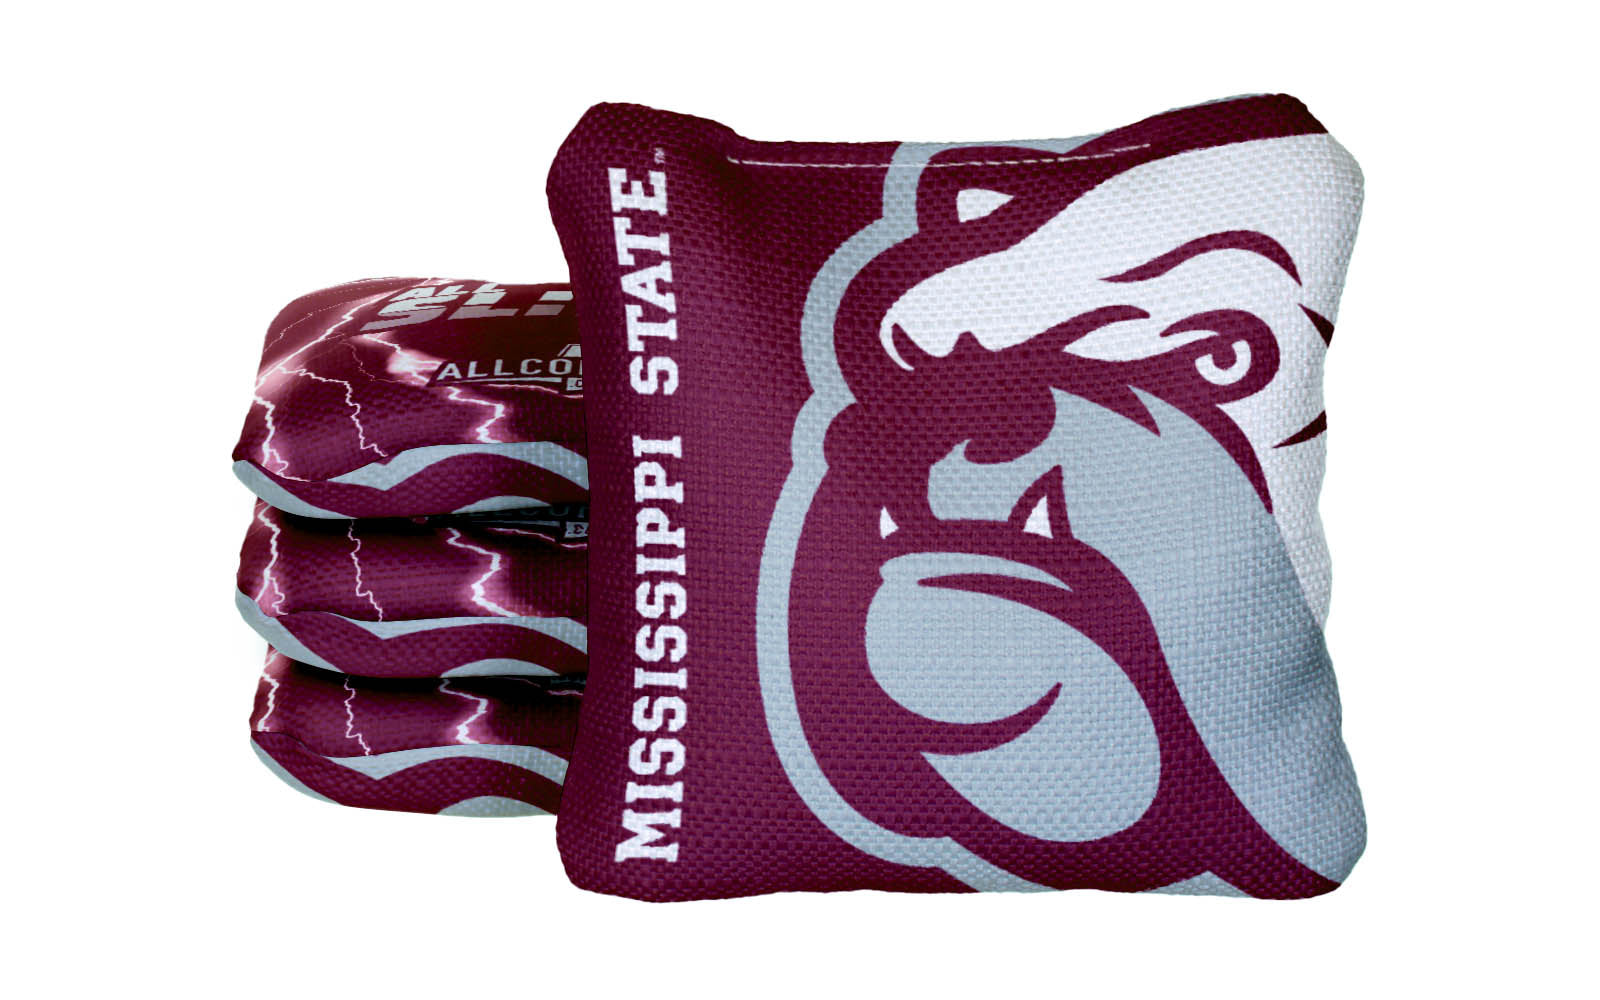 Officially Licensed Collegiate Cornhole Bags - AllCornhole All-Slide 2.0 - Set of 4 - Mississippi State University